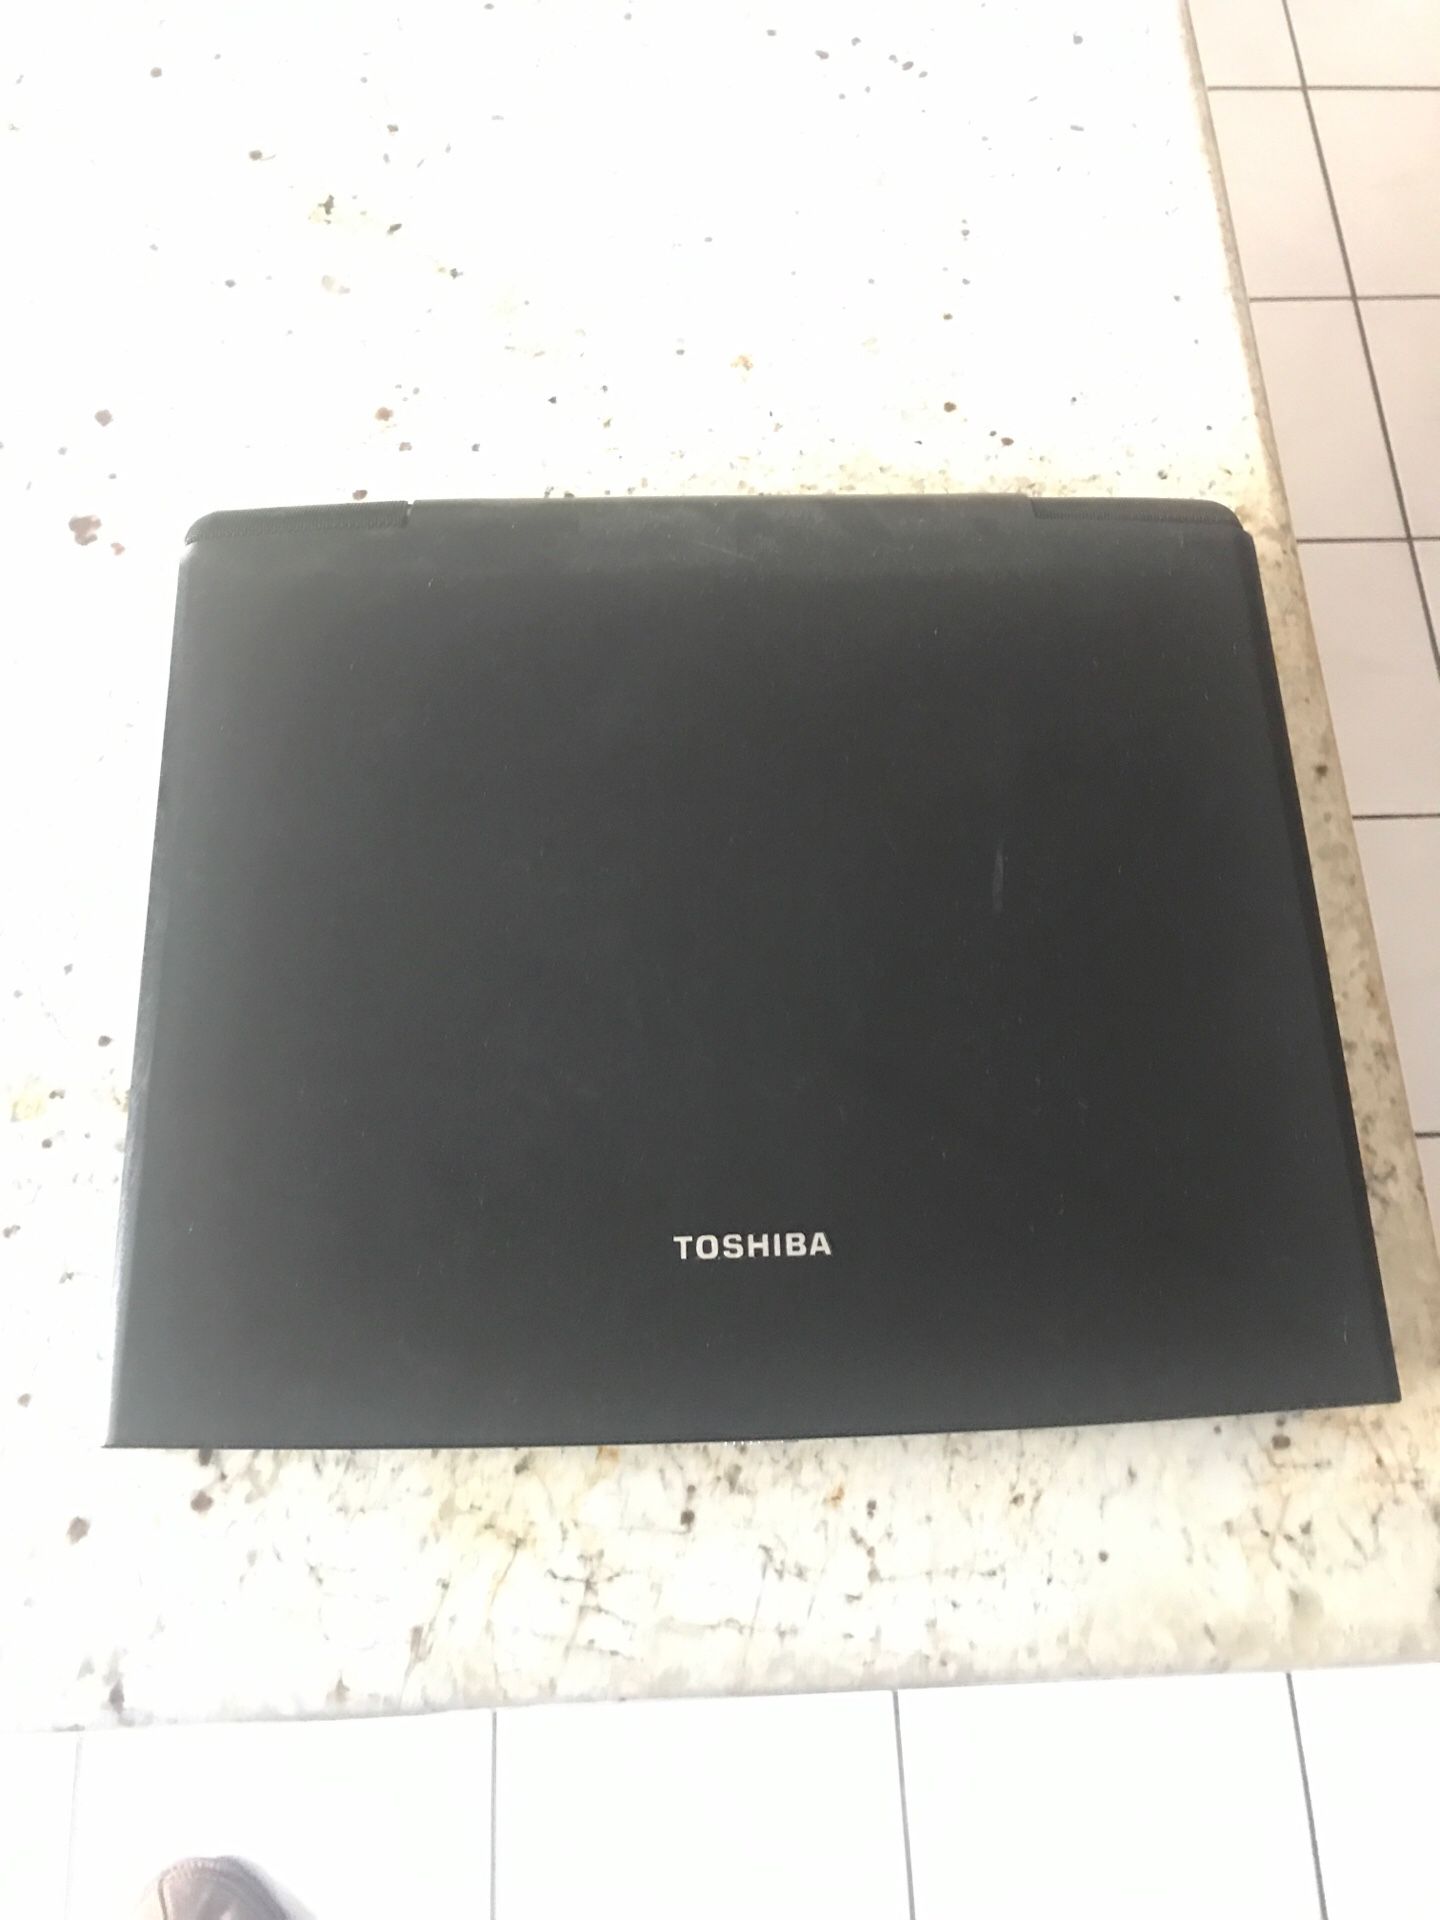 Toshiba Tecra TE2100 Laptop